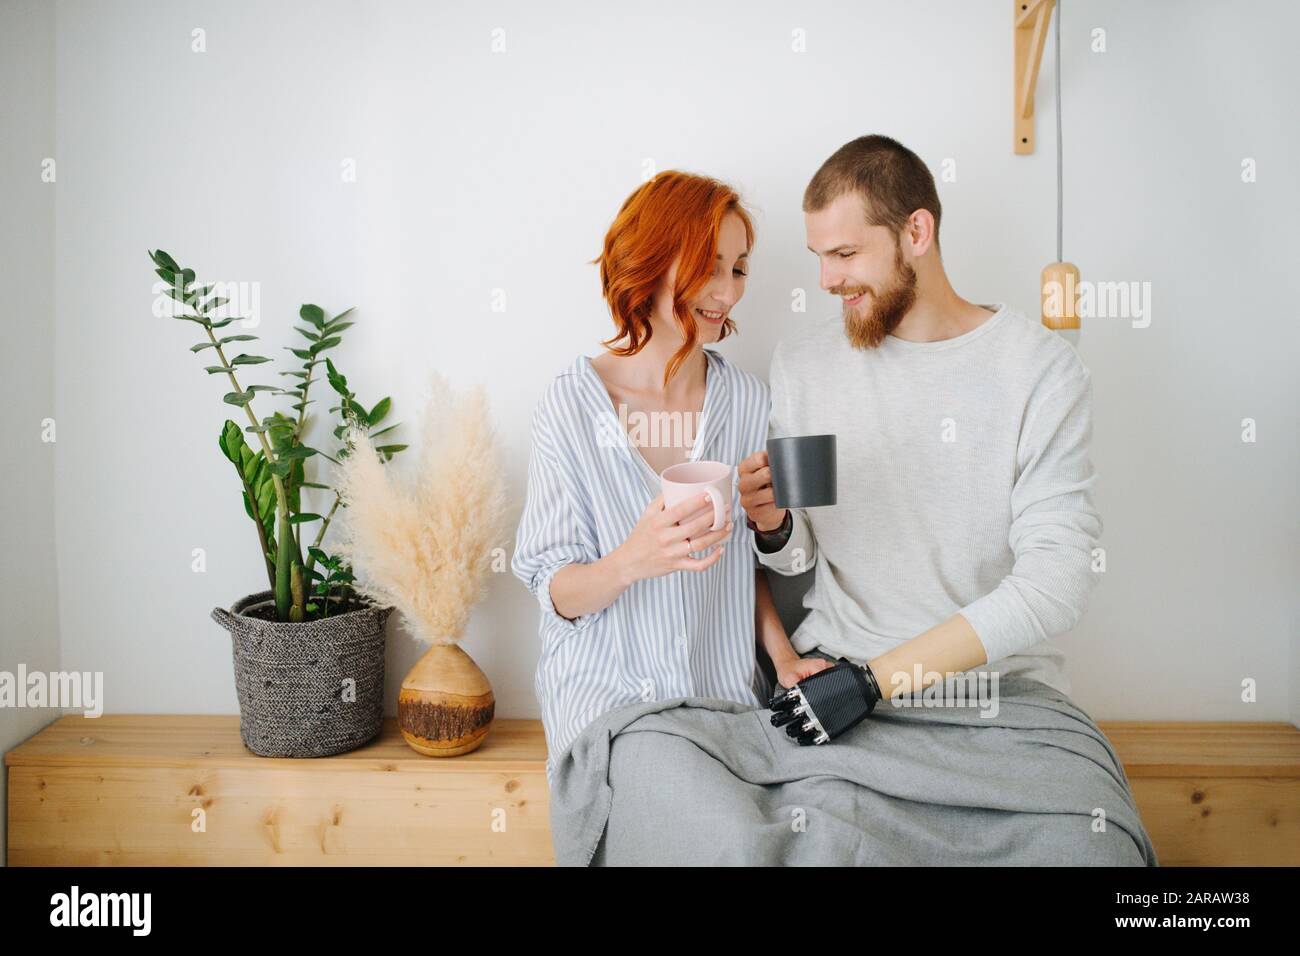 Glücklicher Ehemann und Frau sitzen zusammen auf einem Regal und trinken zu Hause Kaffee. Stockfoto